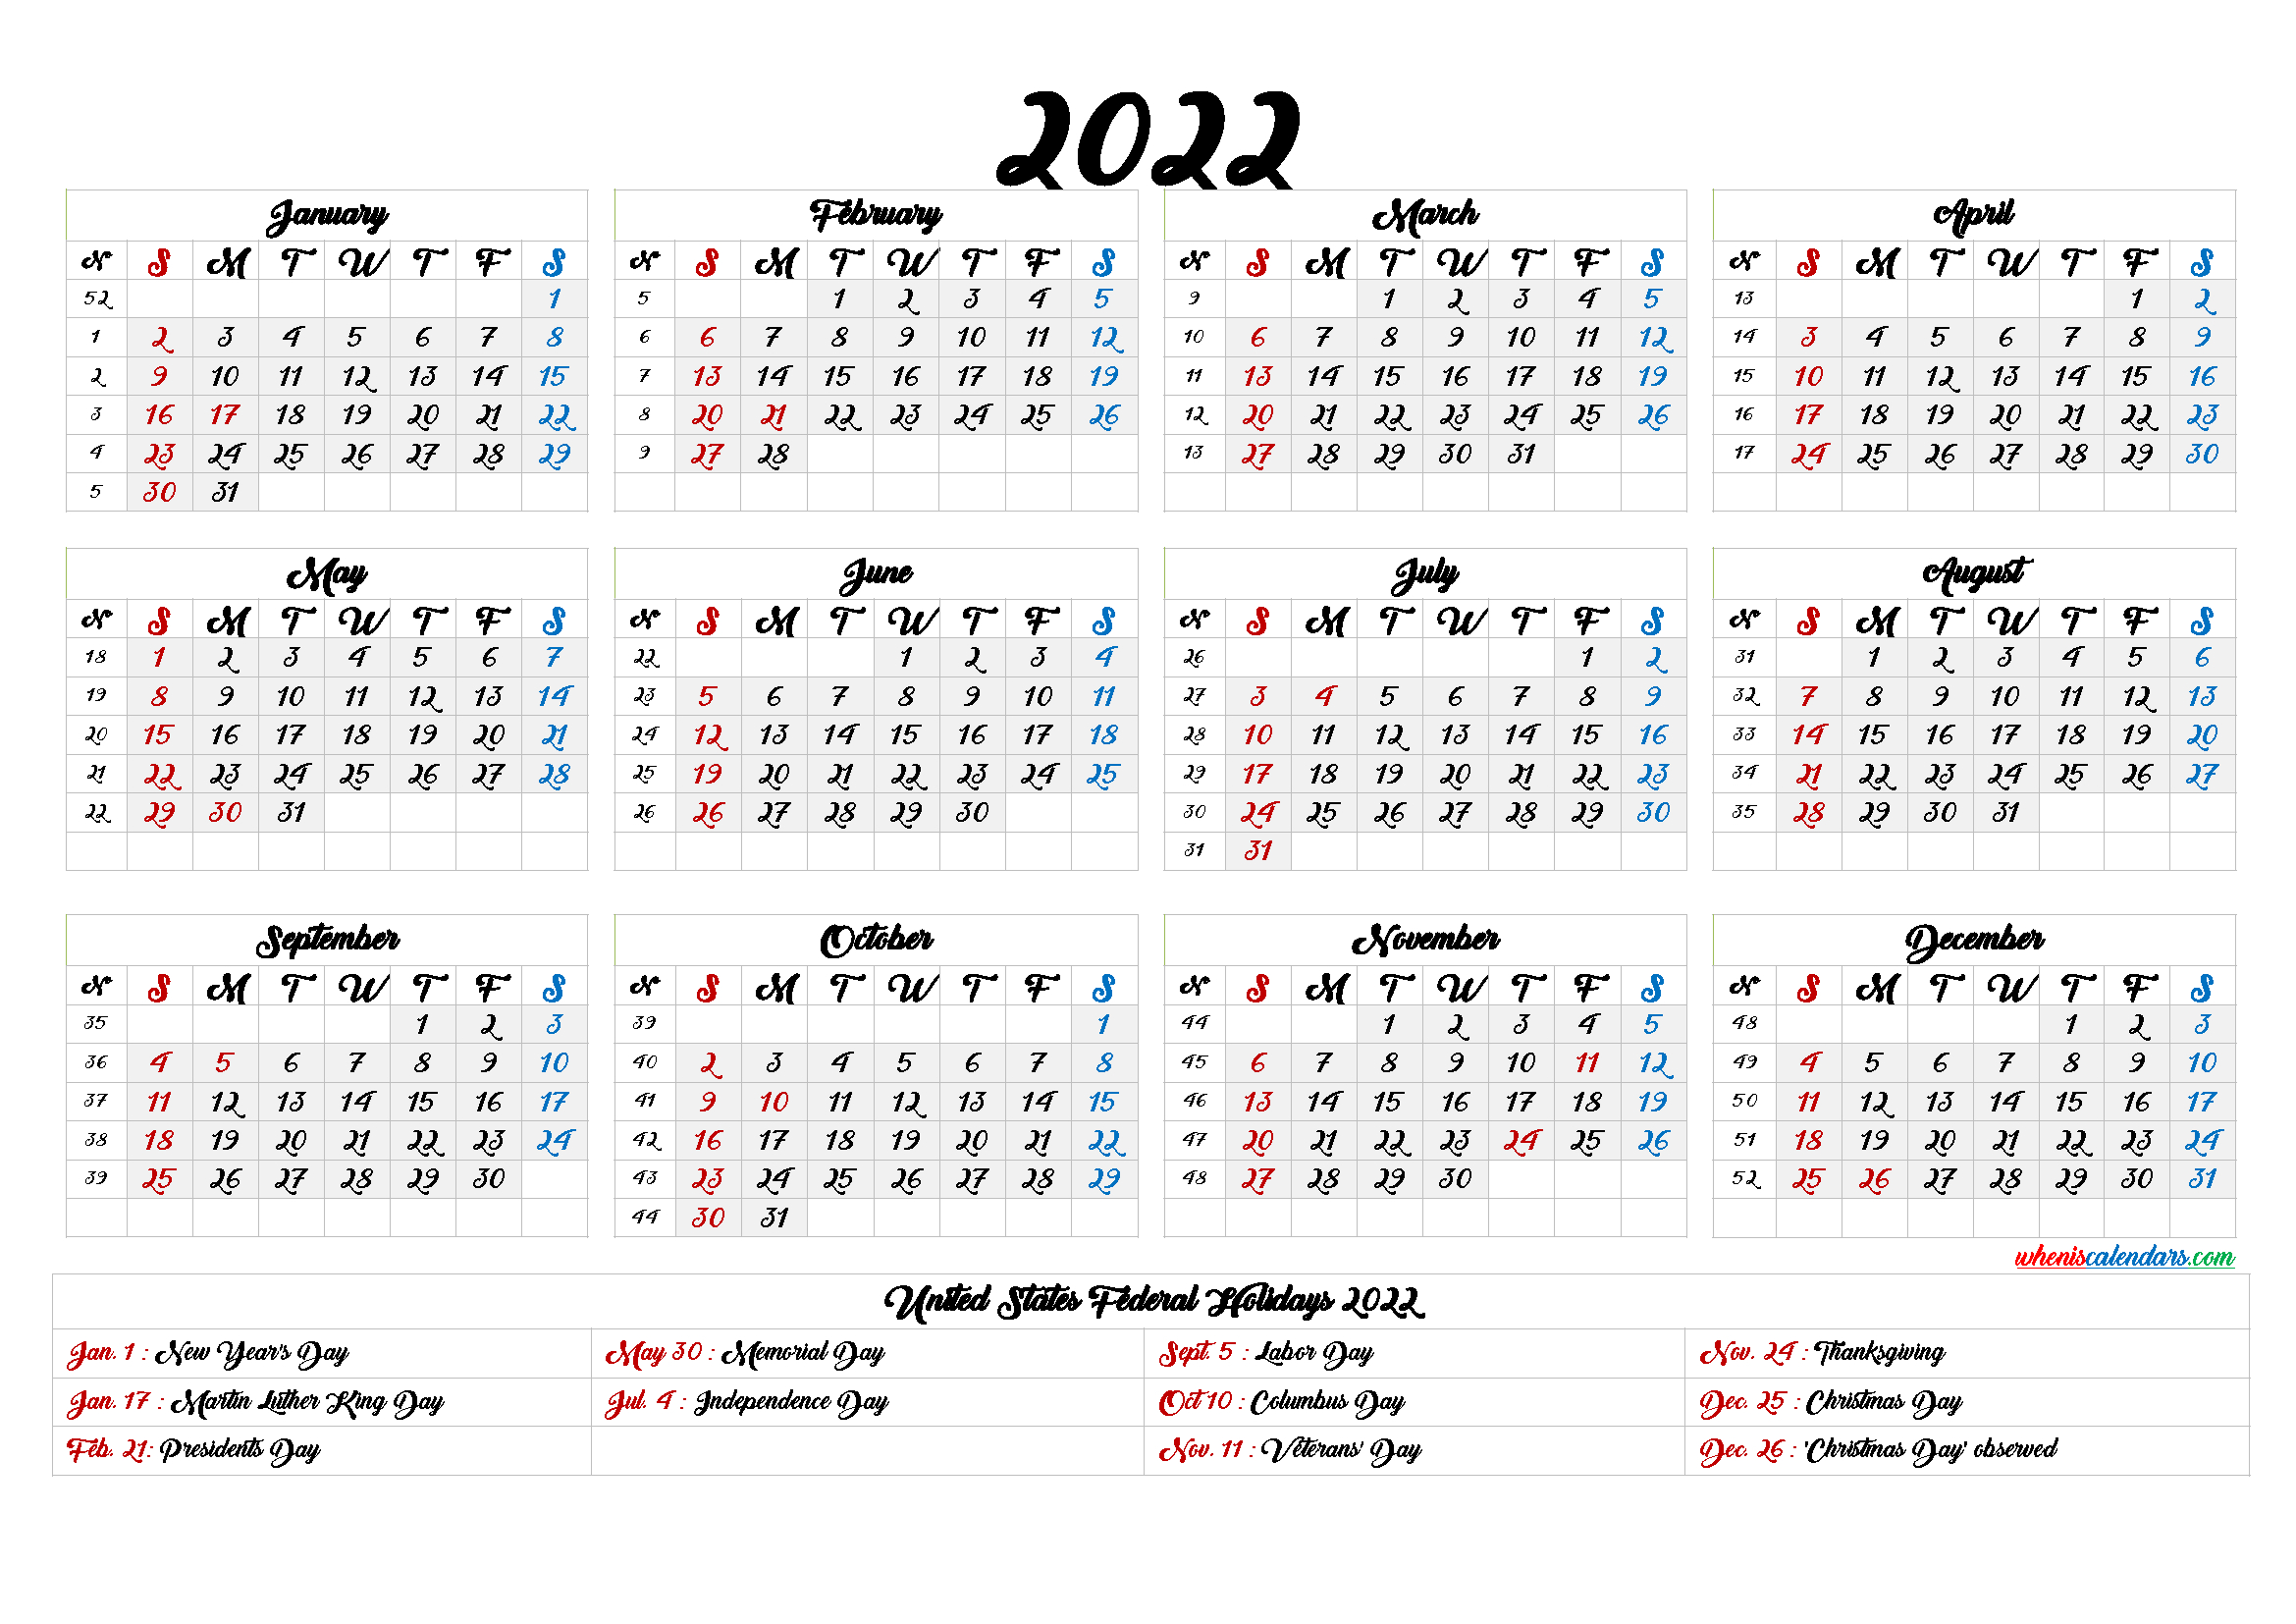 Nalc Calendar 2023 2023 Calendar